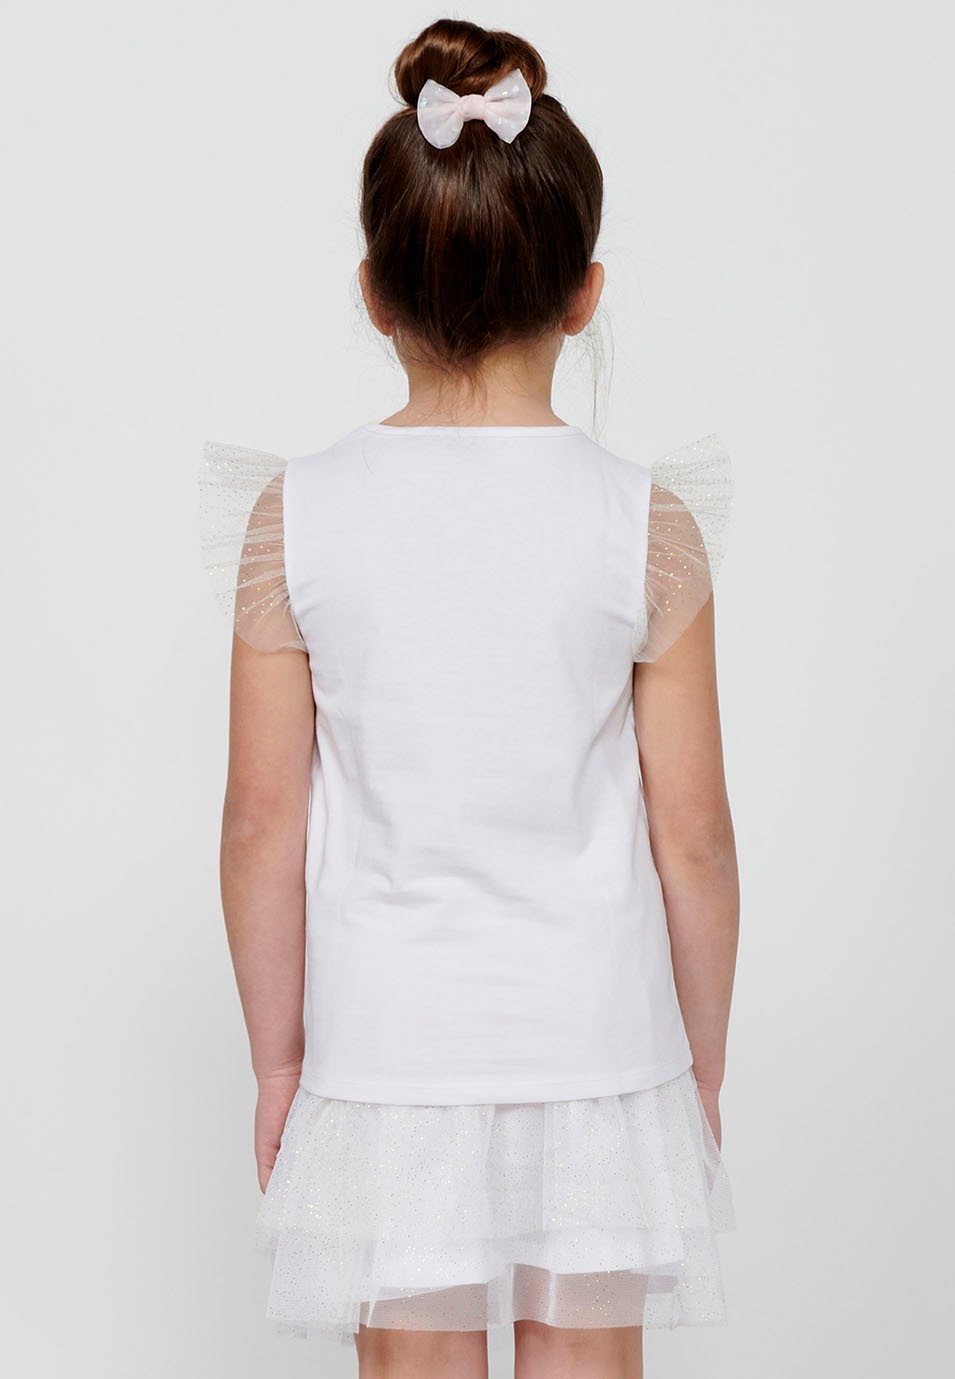 T-shirt manches courtes avec volants et imprimé blanc sur le devant pour fille 4